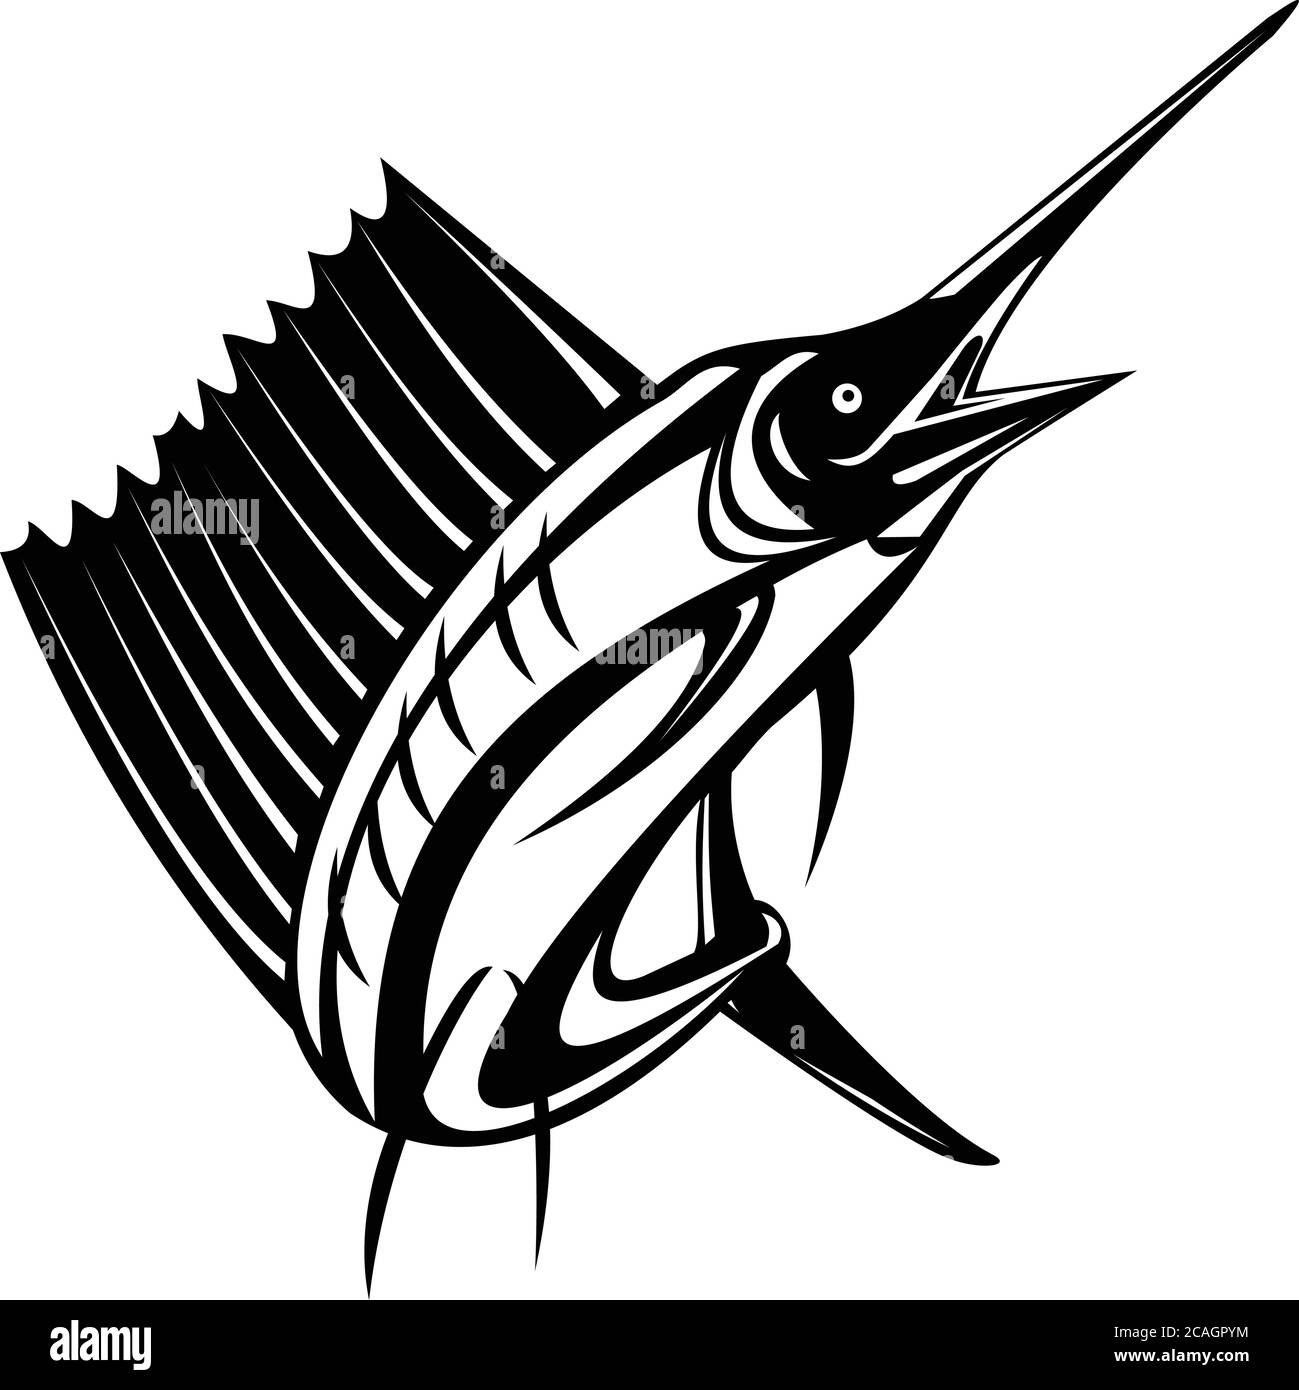 Ilustración de un pez vela del Atlántico o pez vela del Indo-Pacífico, un pez del género istiophorus de peces picudos que viven en zonas frías, jumpi Ilustración del Vector